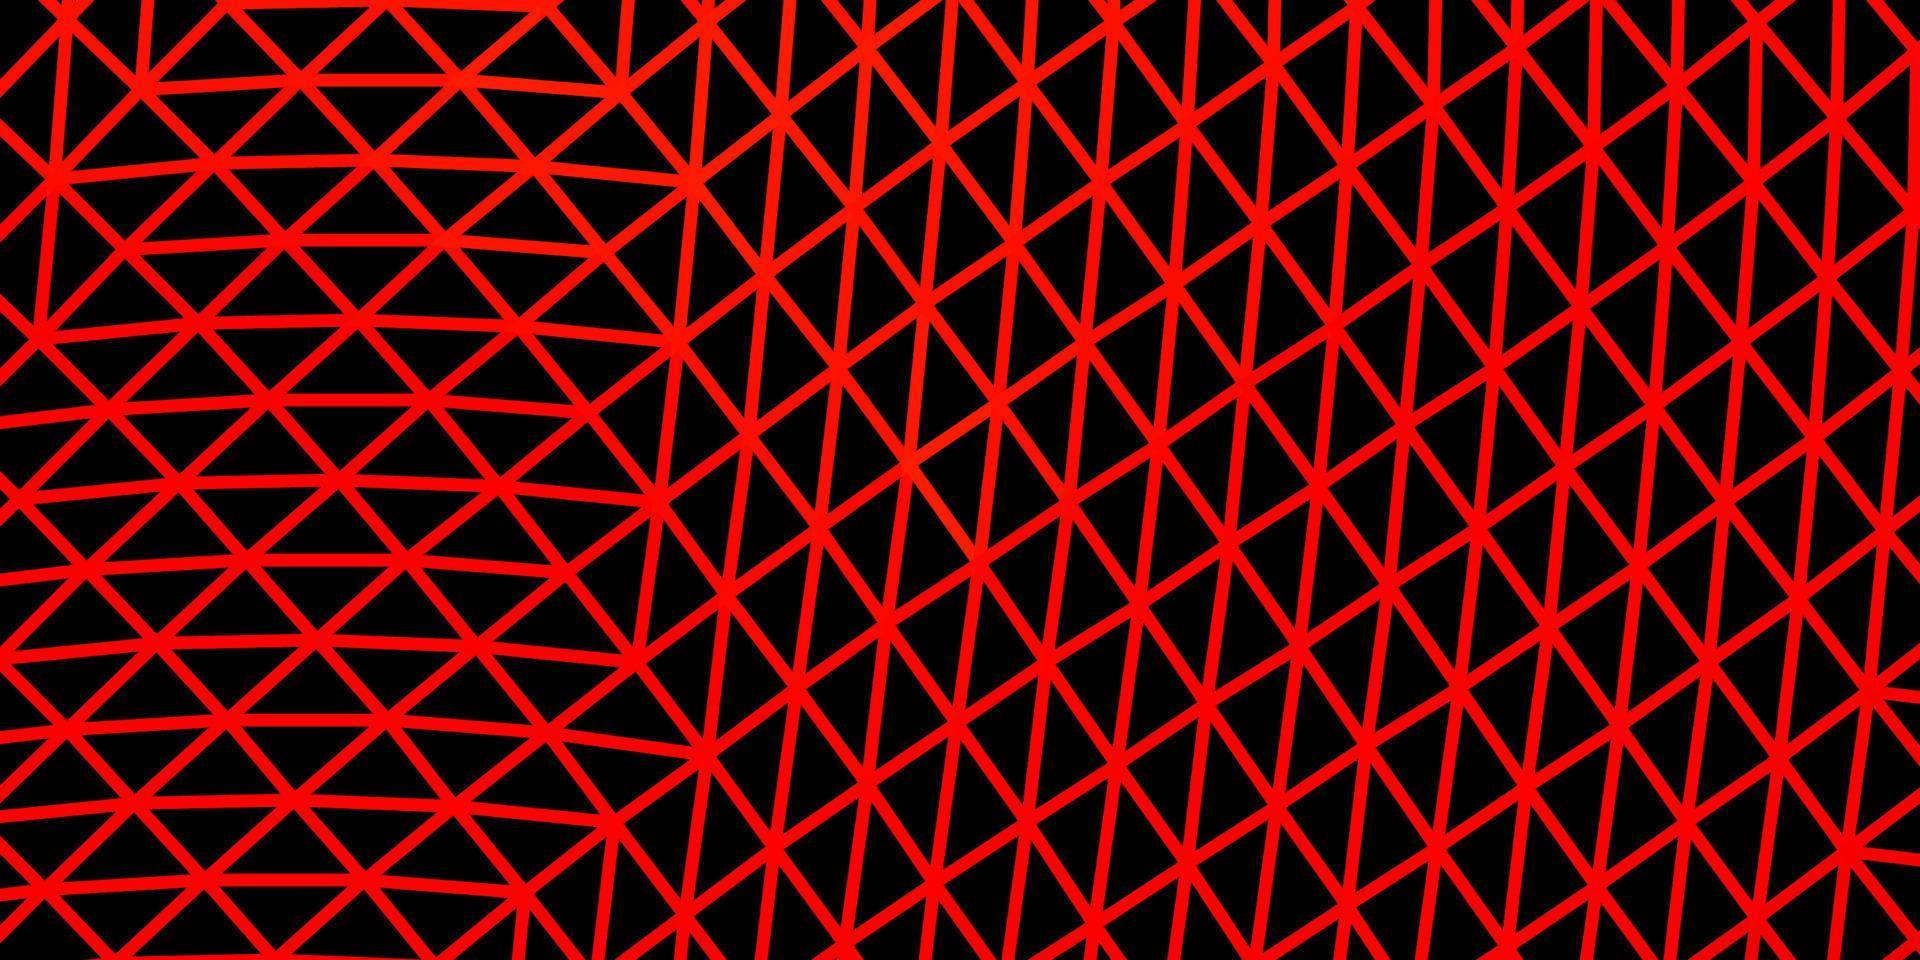 cenário de mosaico de triângulo de vetor vermelho escuro.